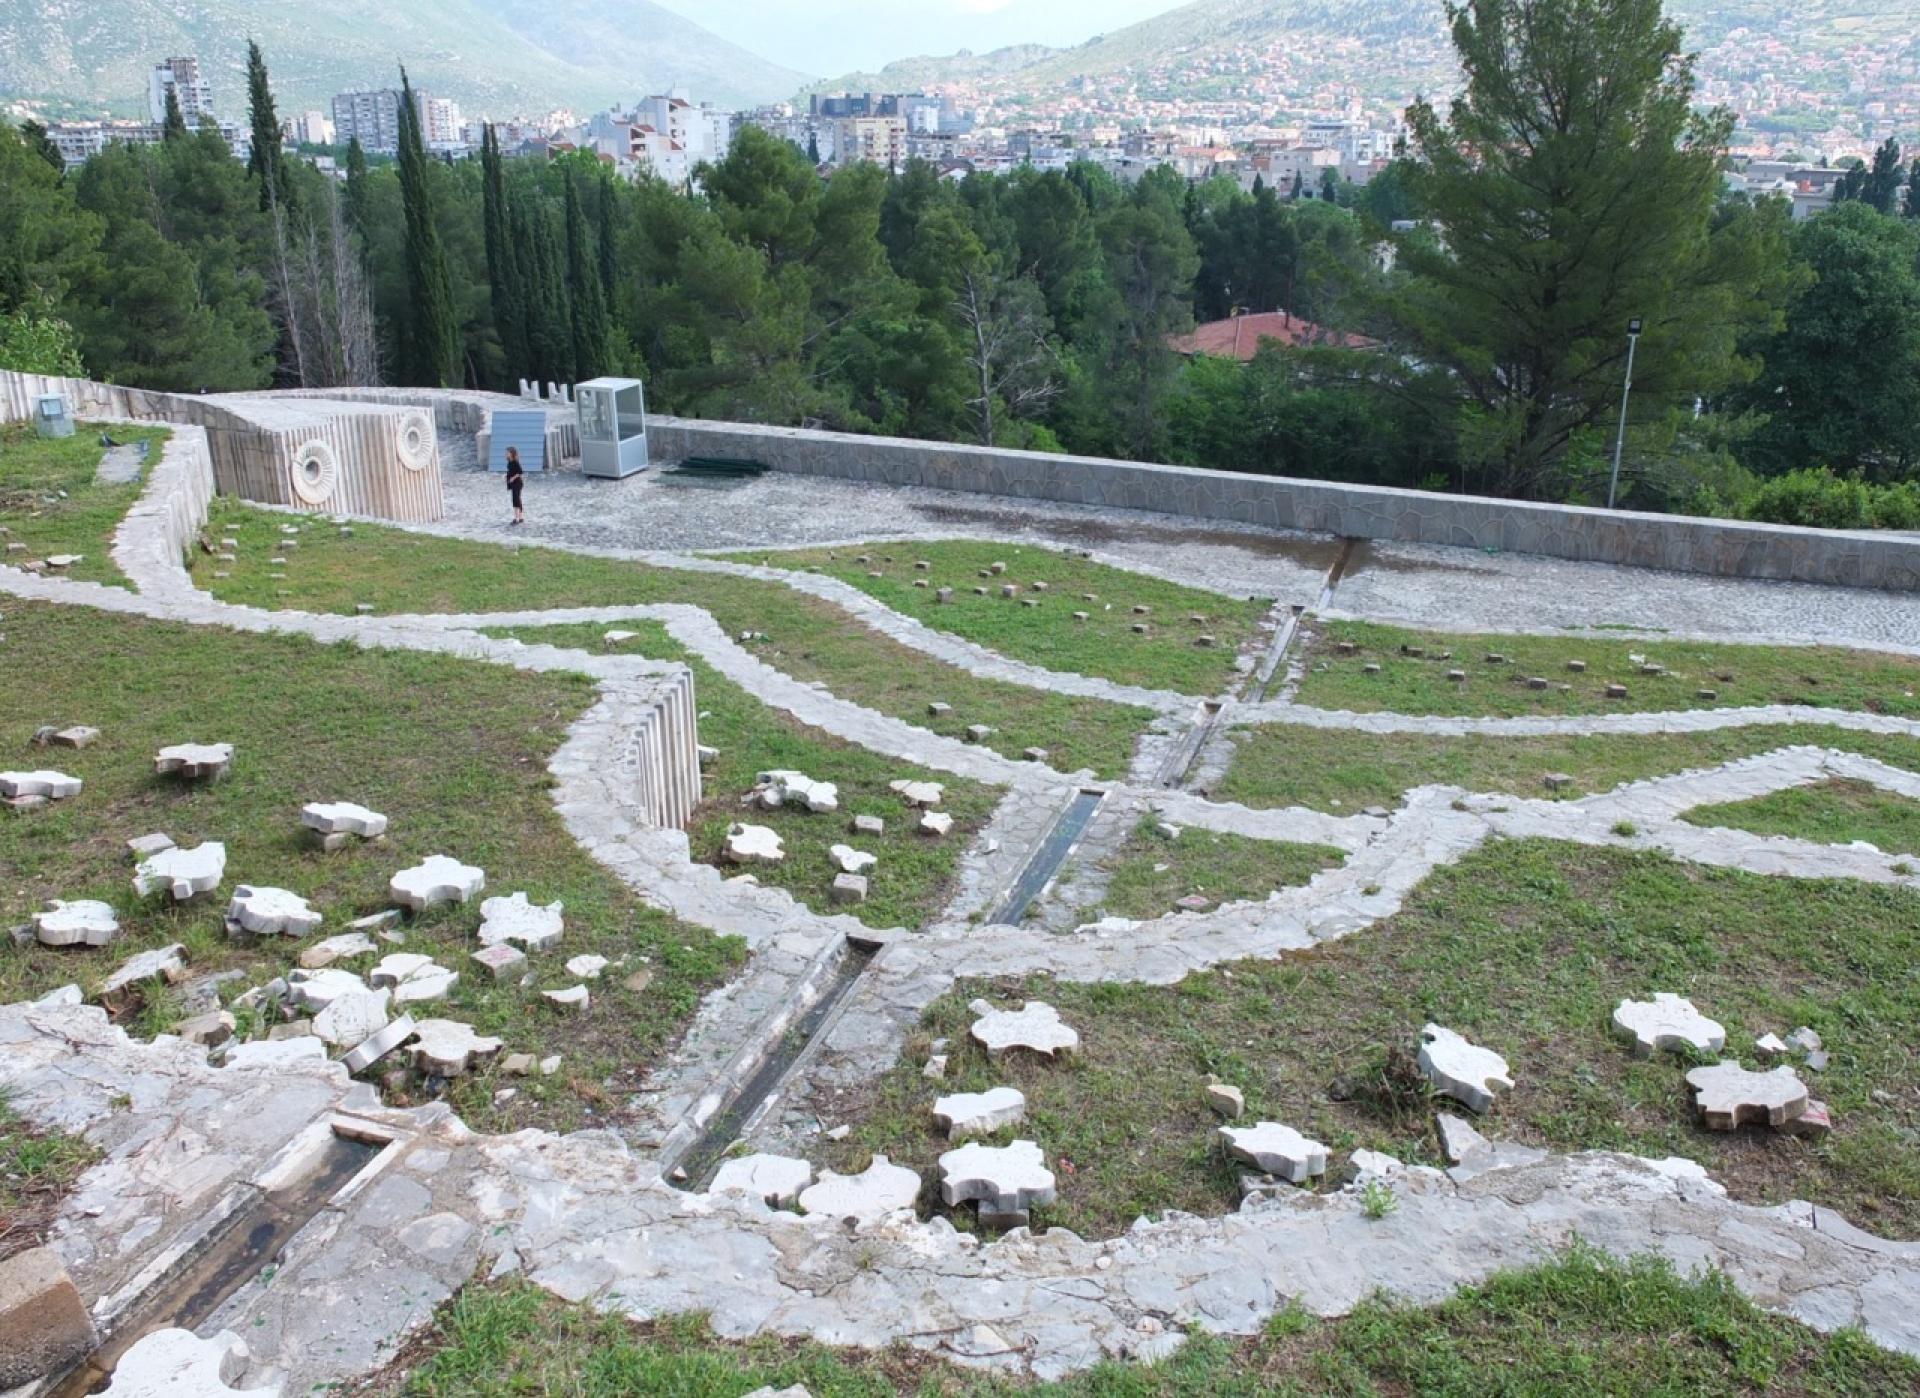 Partisan Memorial Cemetery in Mostar (1965) by Bogdan Bogdanović. | Photo analysis Peter Grudina